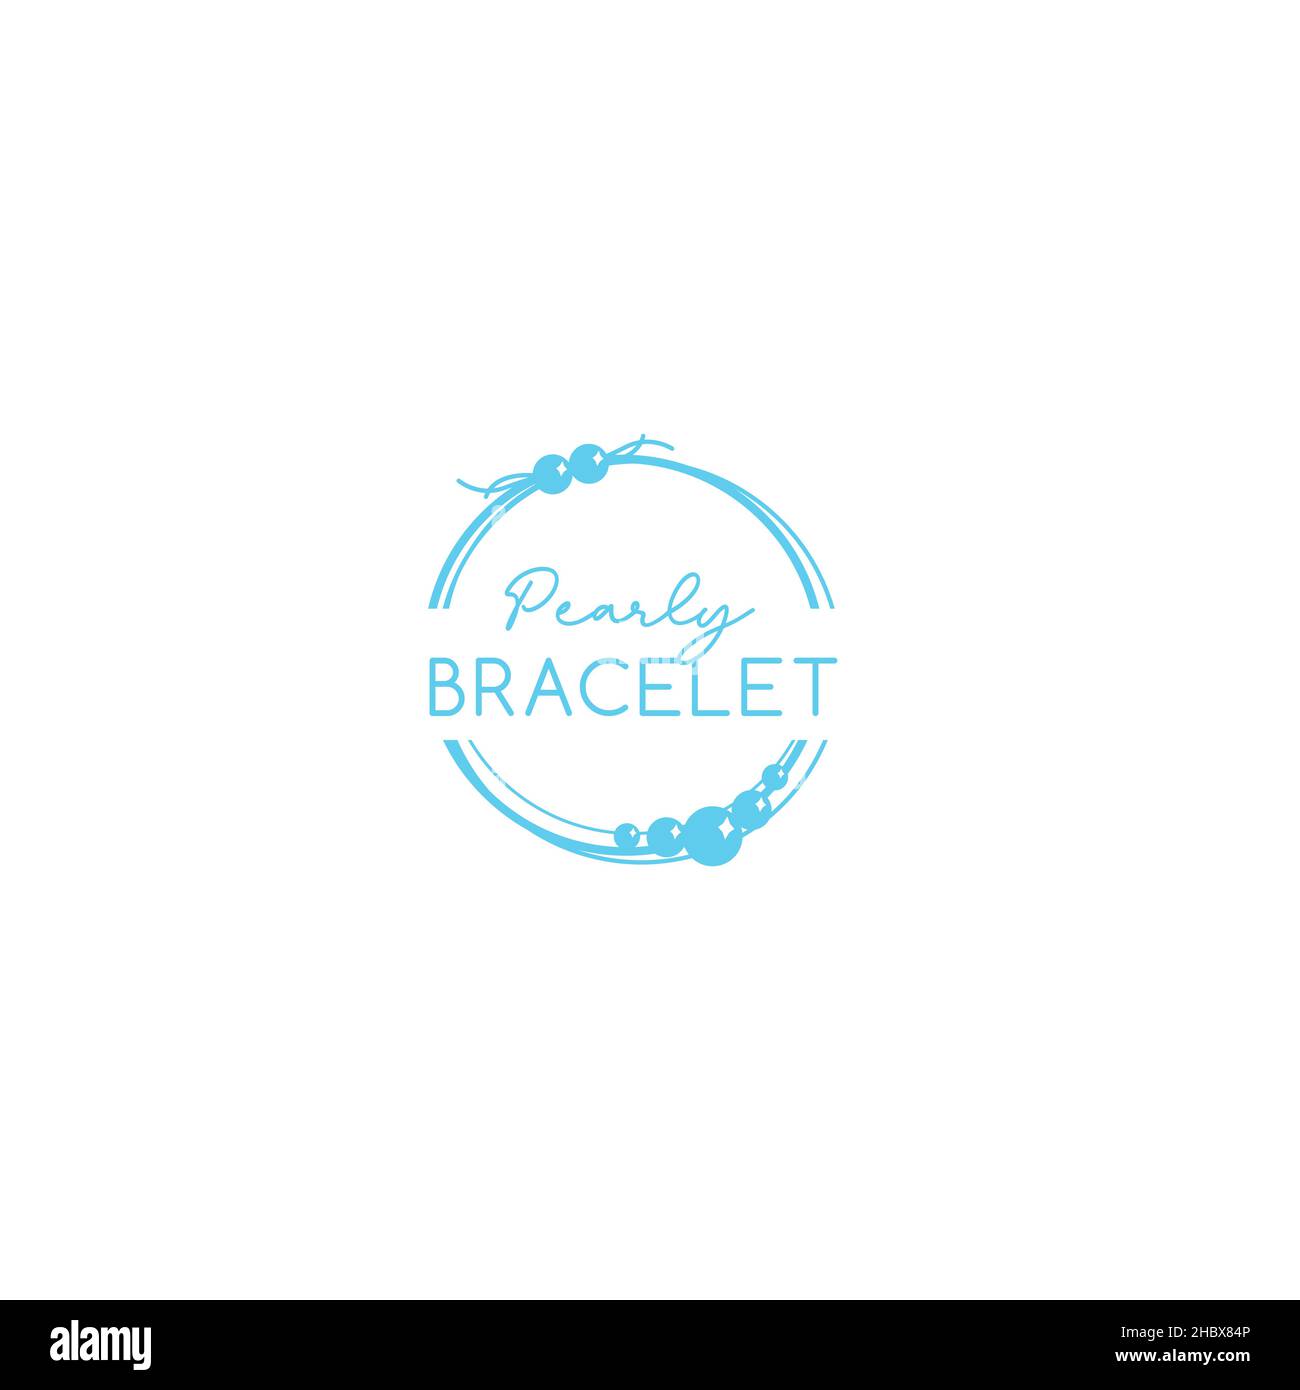 Details 70+ bracelet logo latest - 3tdesign.edu.vn